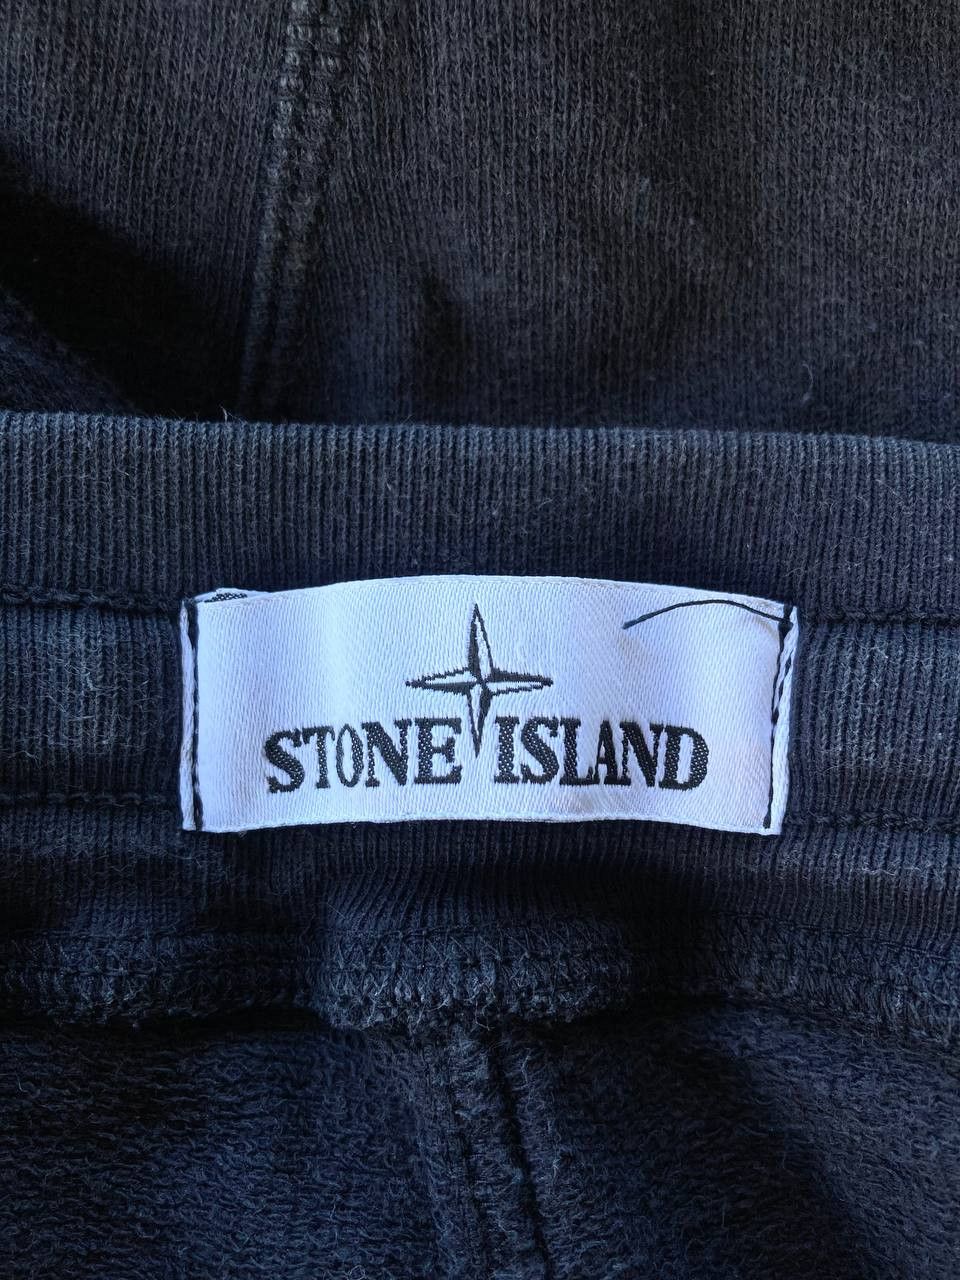 Stone Island Dyed Bermuda Shorts - 7